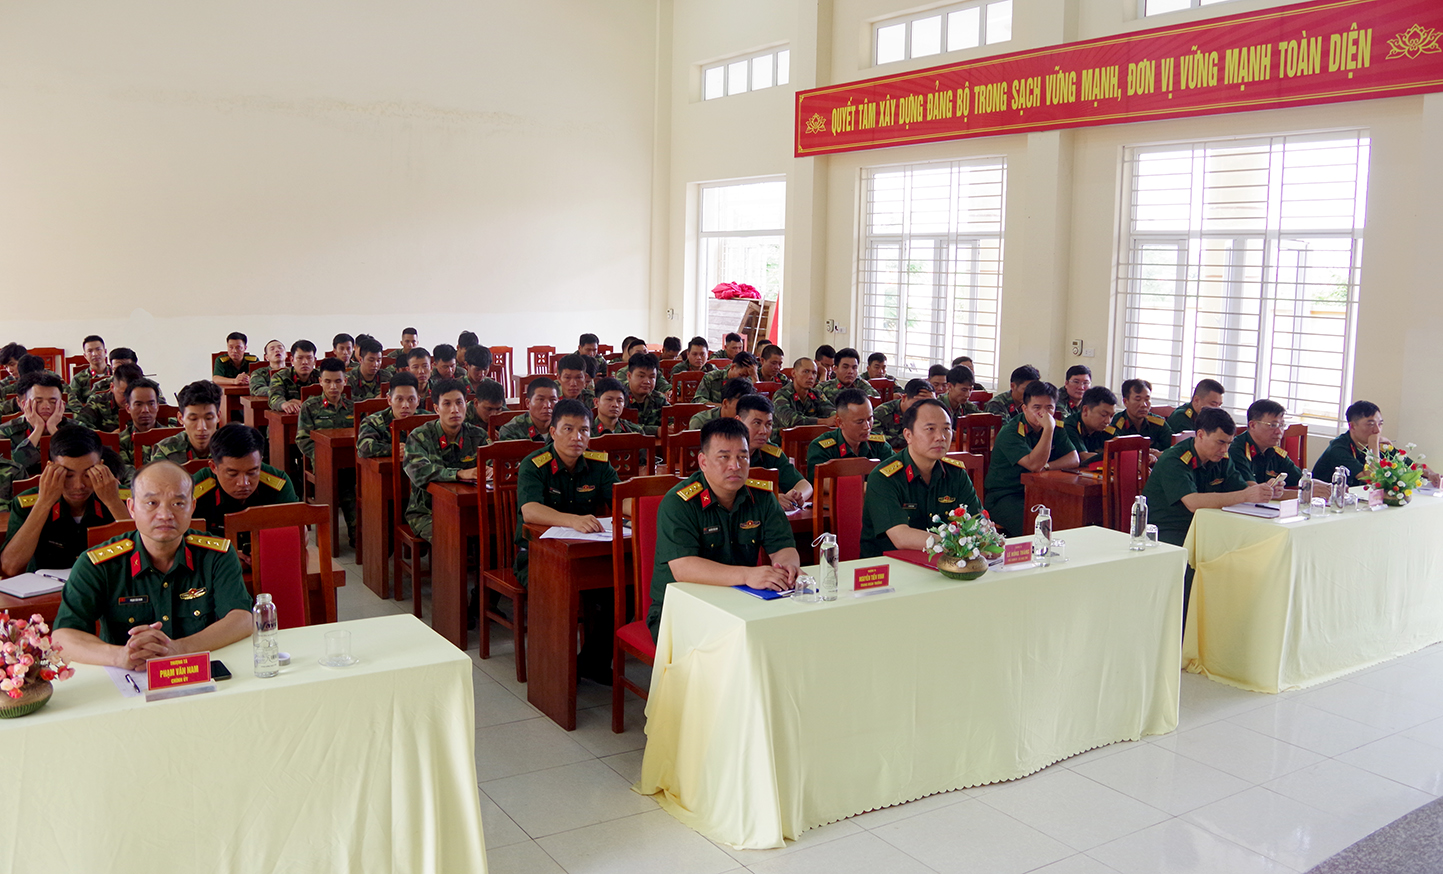 Các đồng chí tham dự khai mạc lớp huấn luyện, bổ túc cấp Đại đội cho sỹ quan dự bị năm 2020